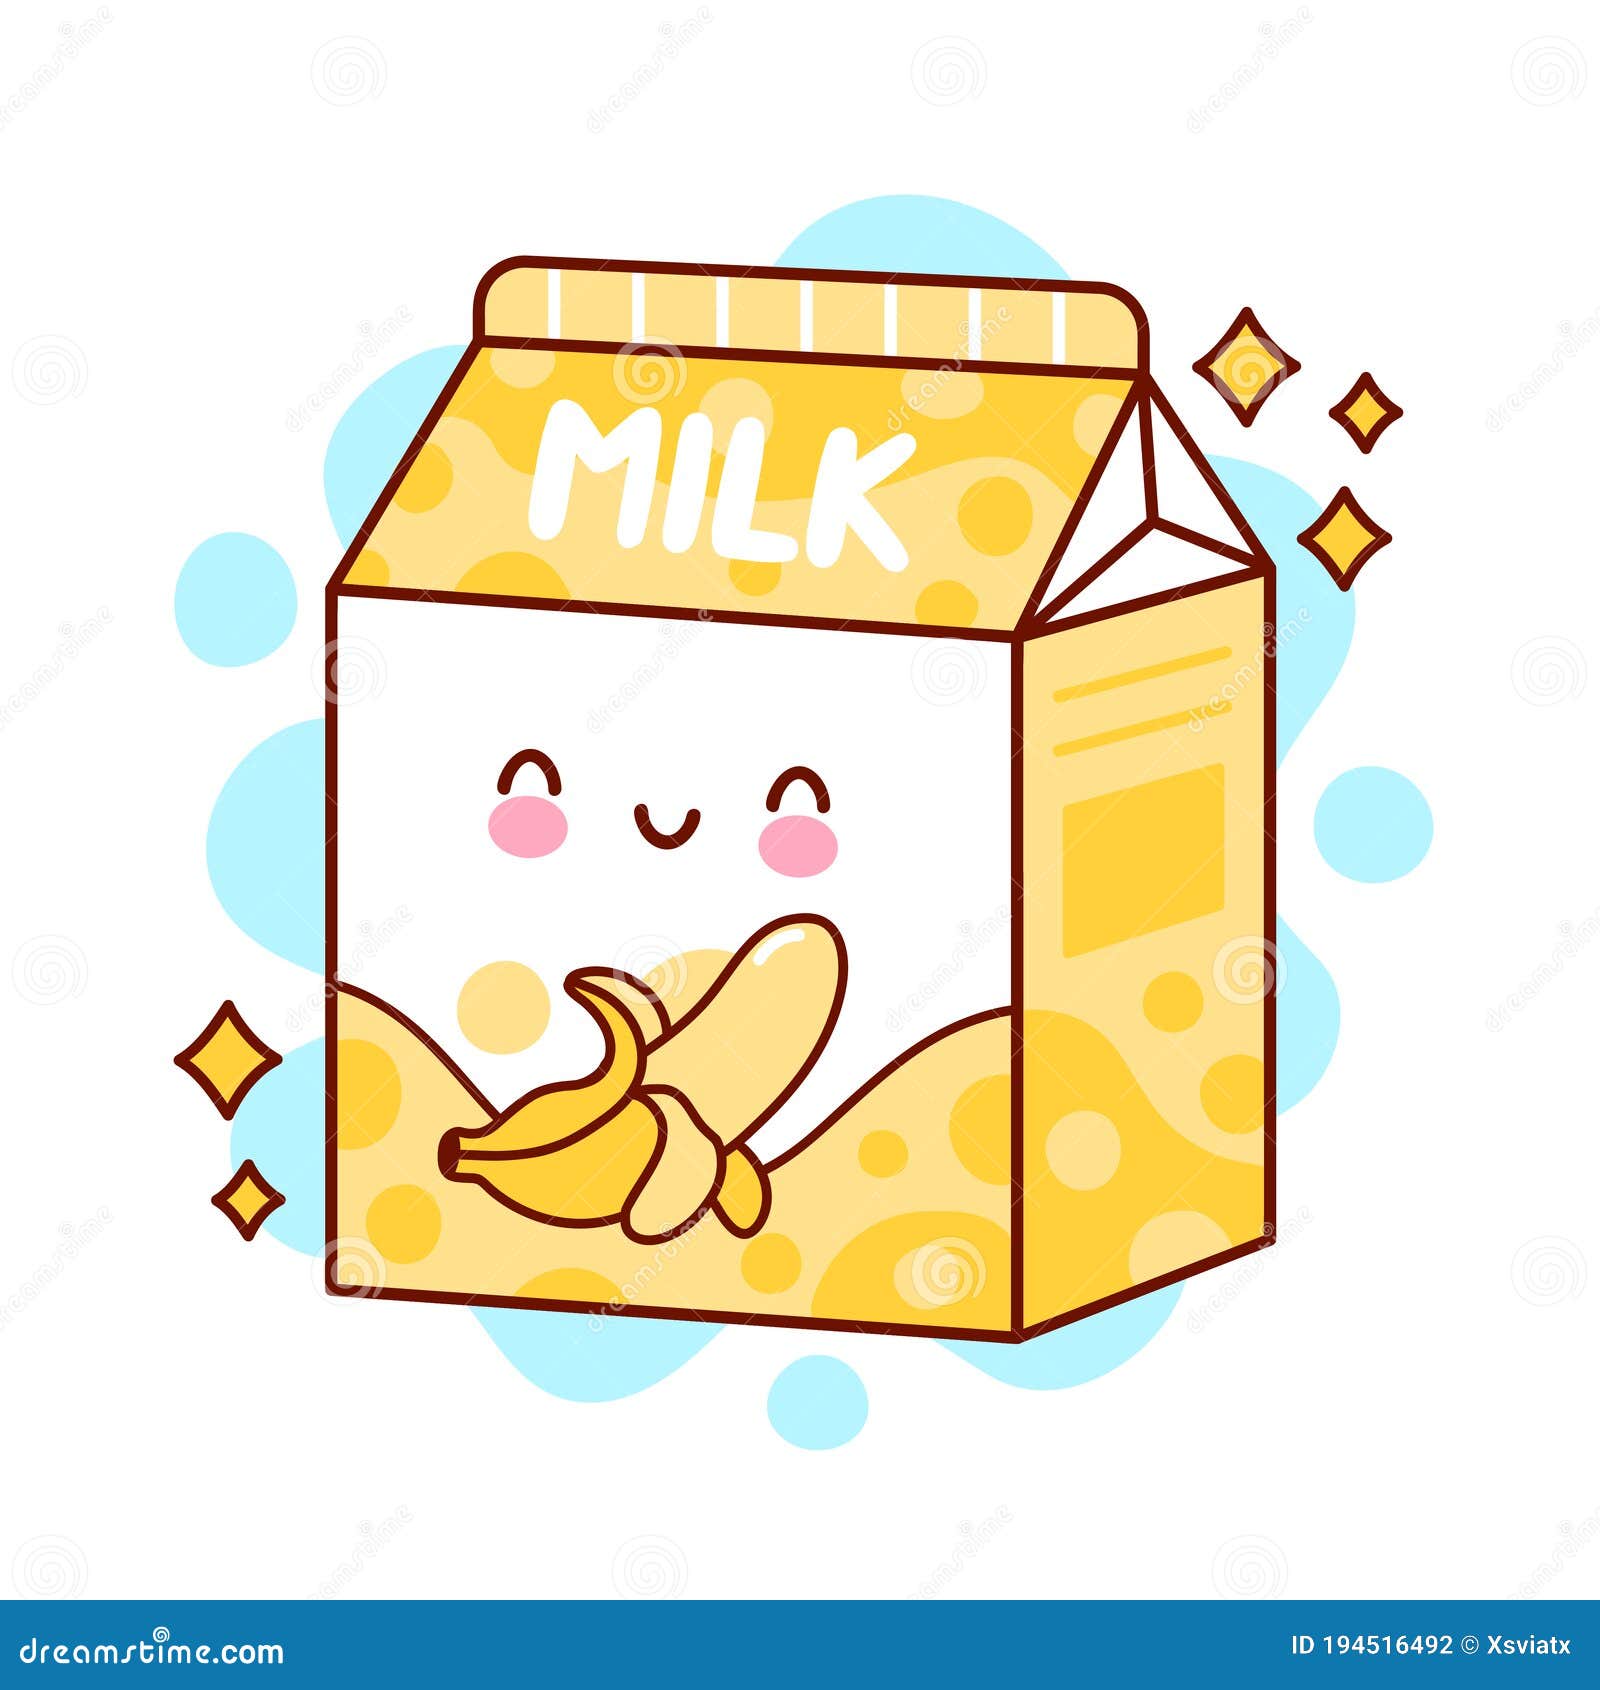 Milk cute